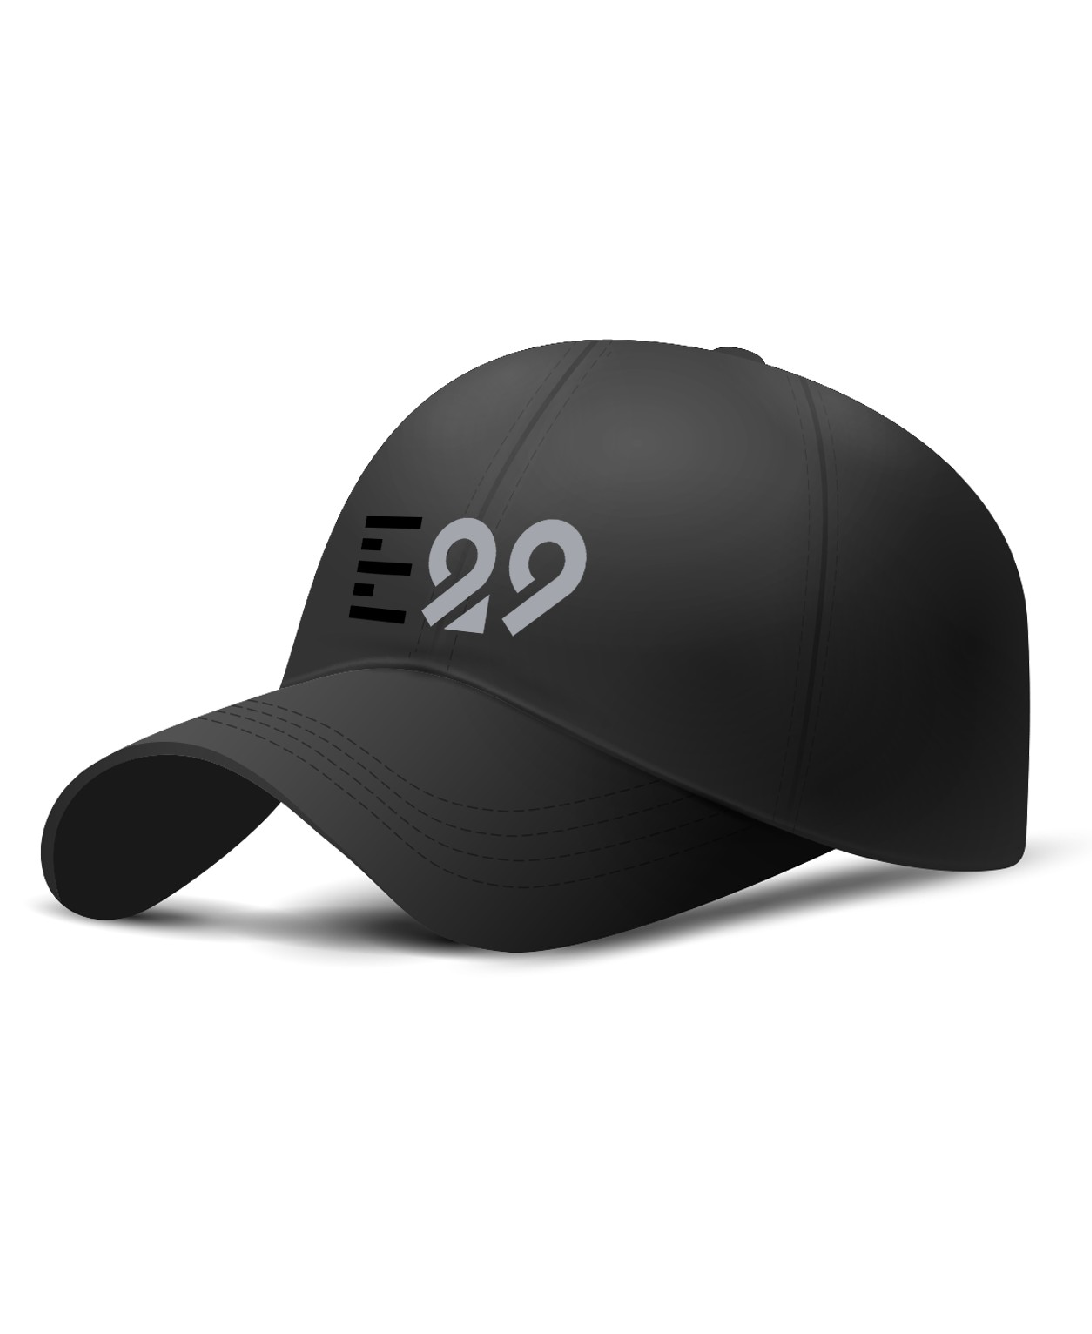 E29 Cap